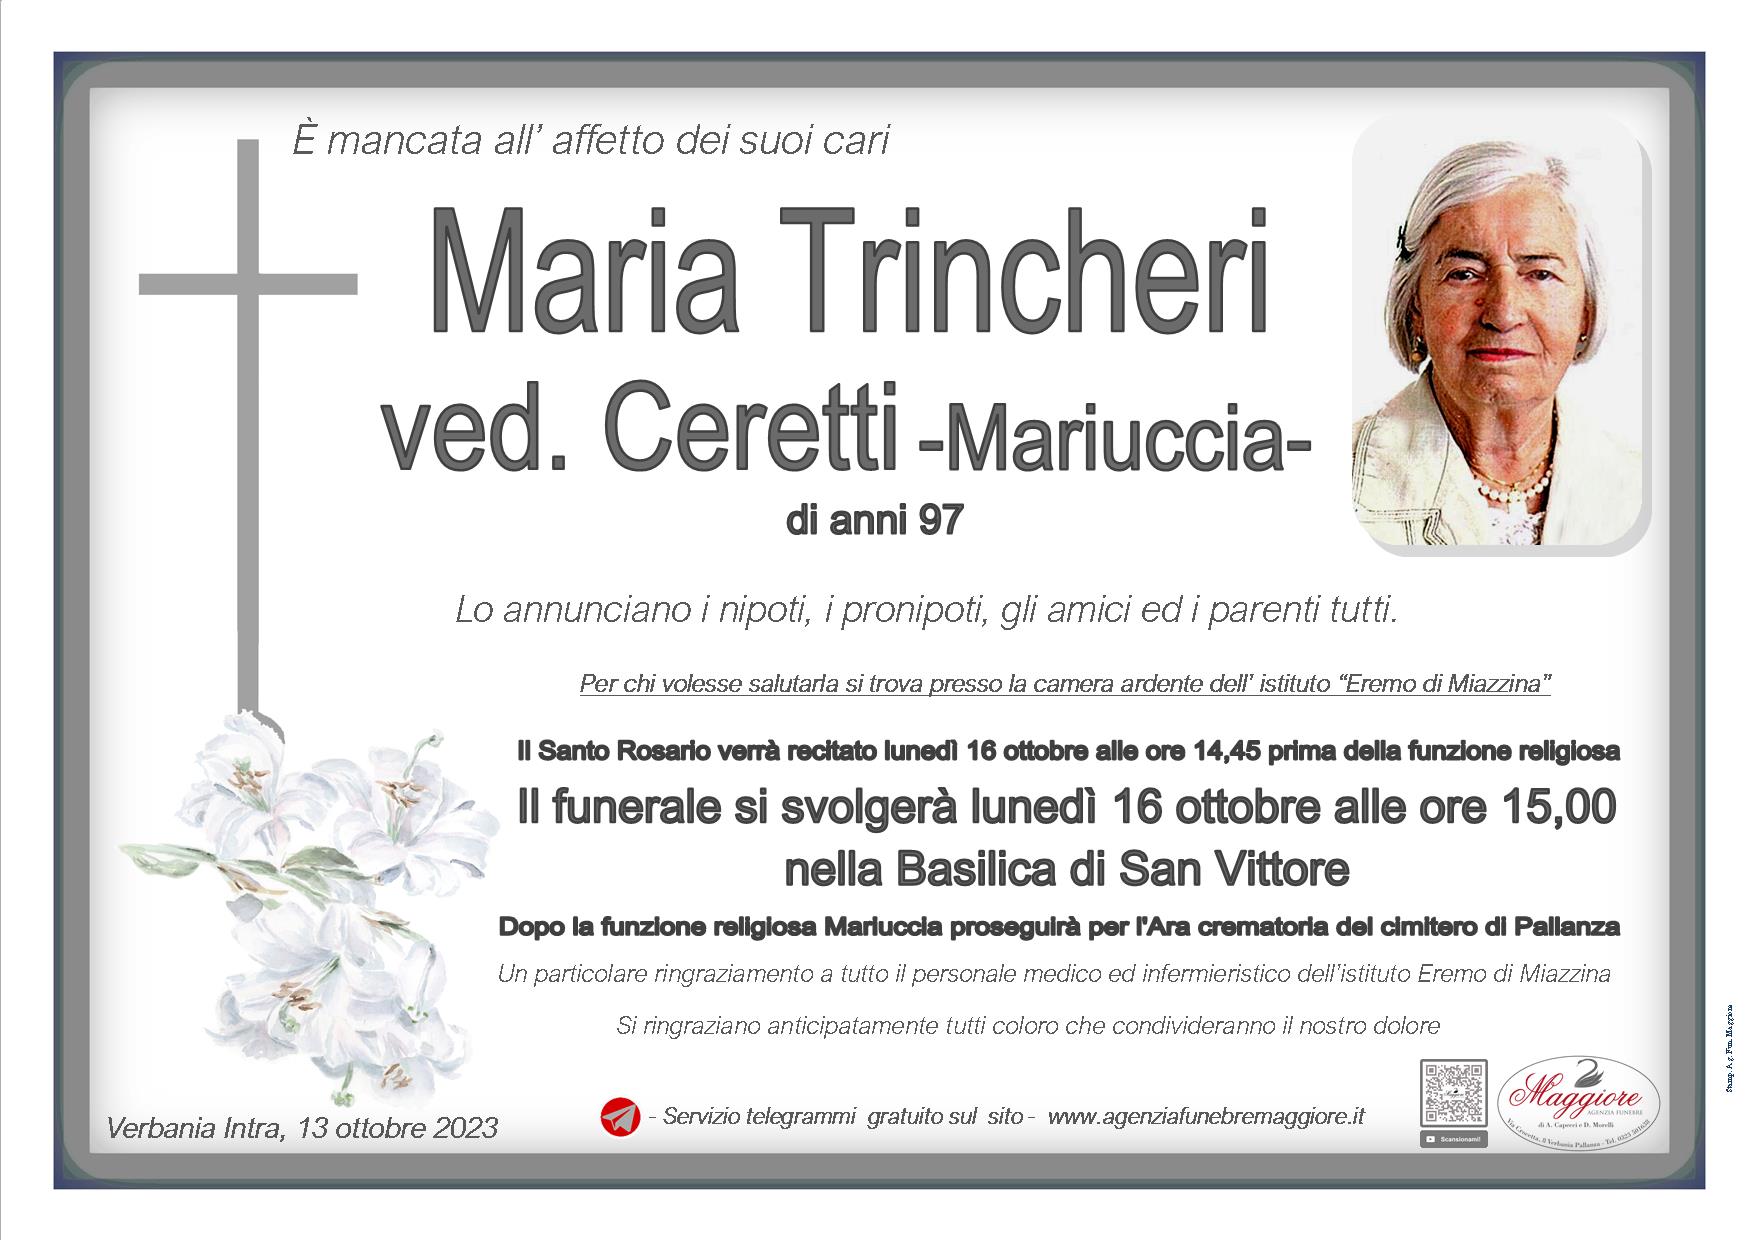 Maria Trincheri ved. Ceretti